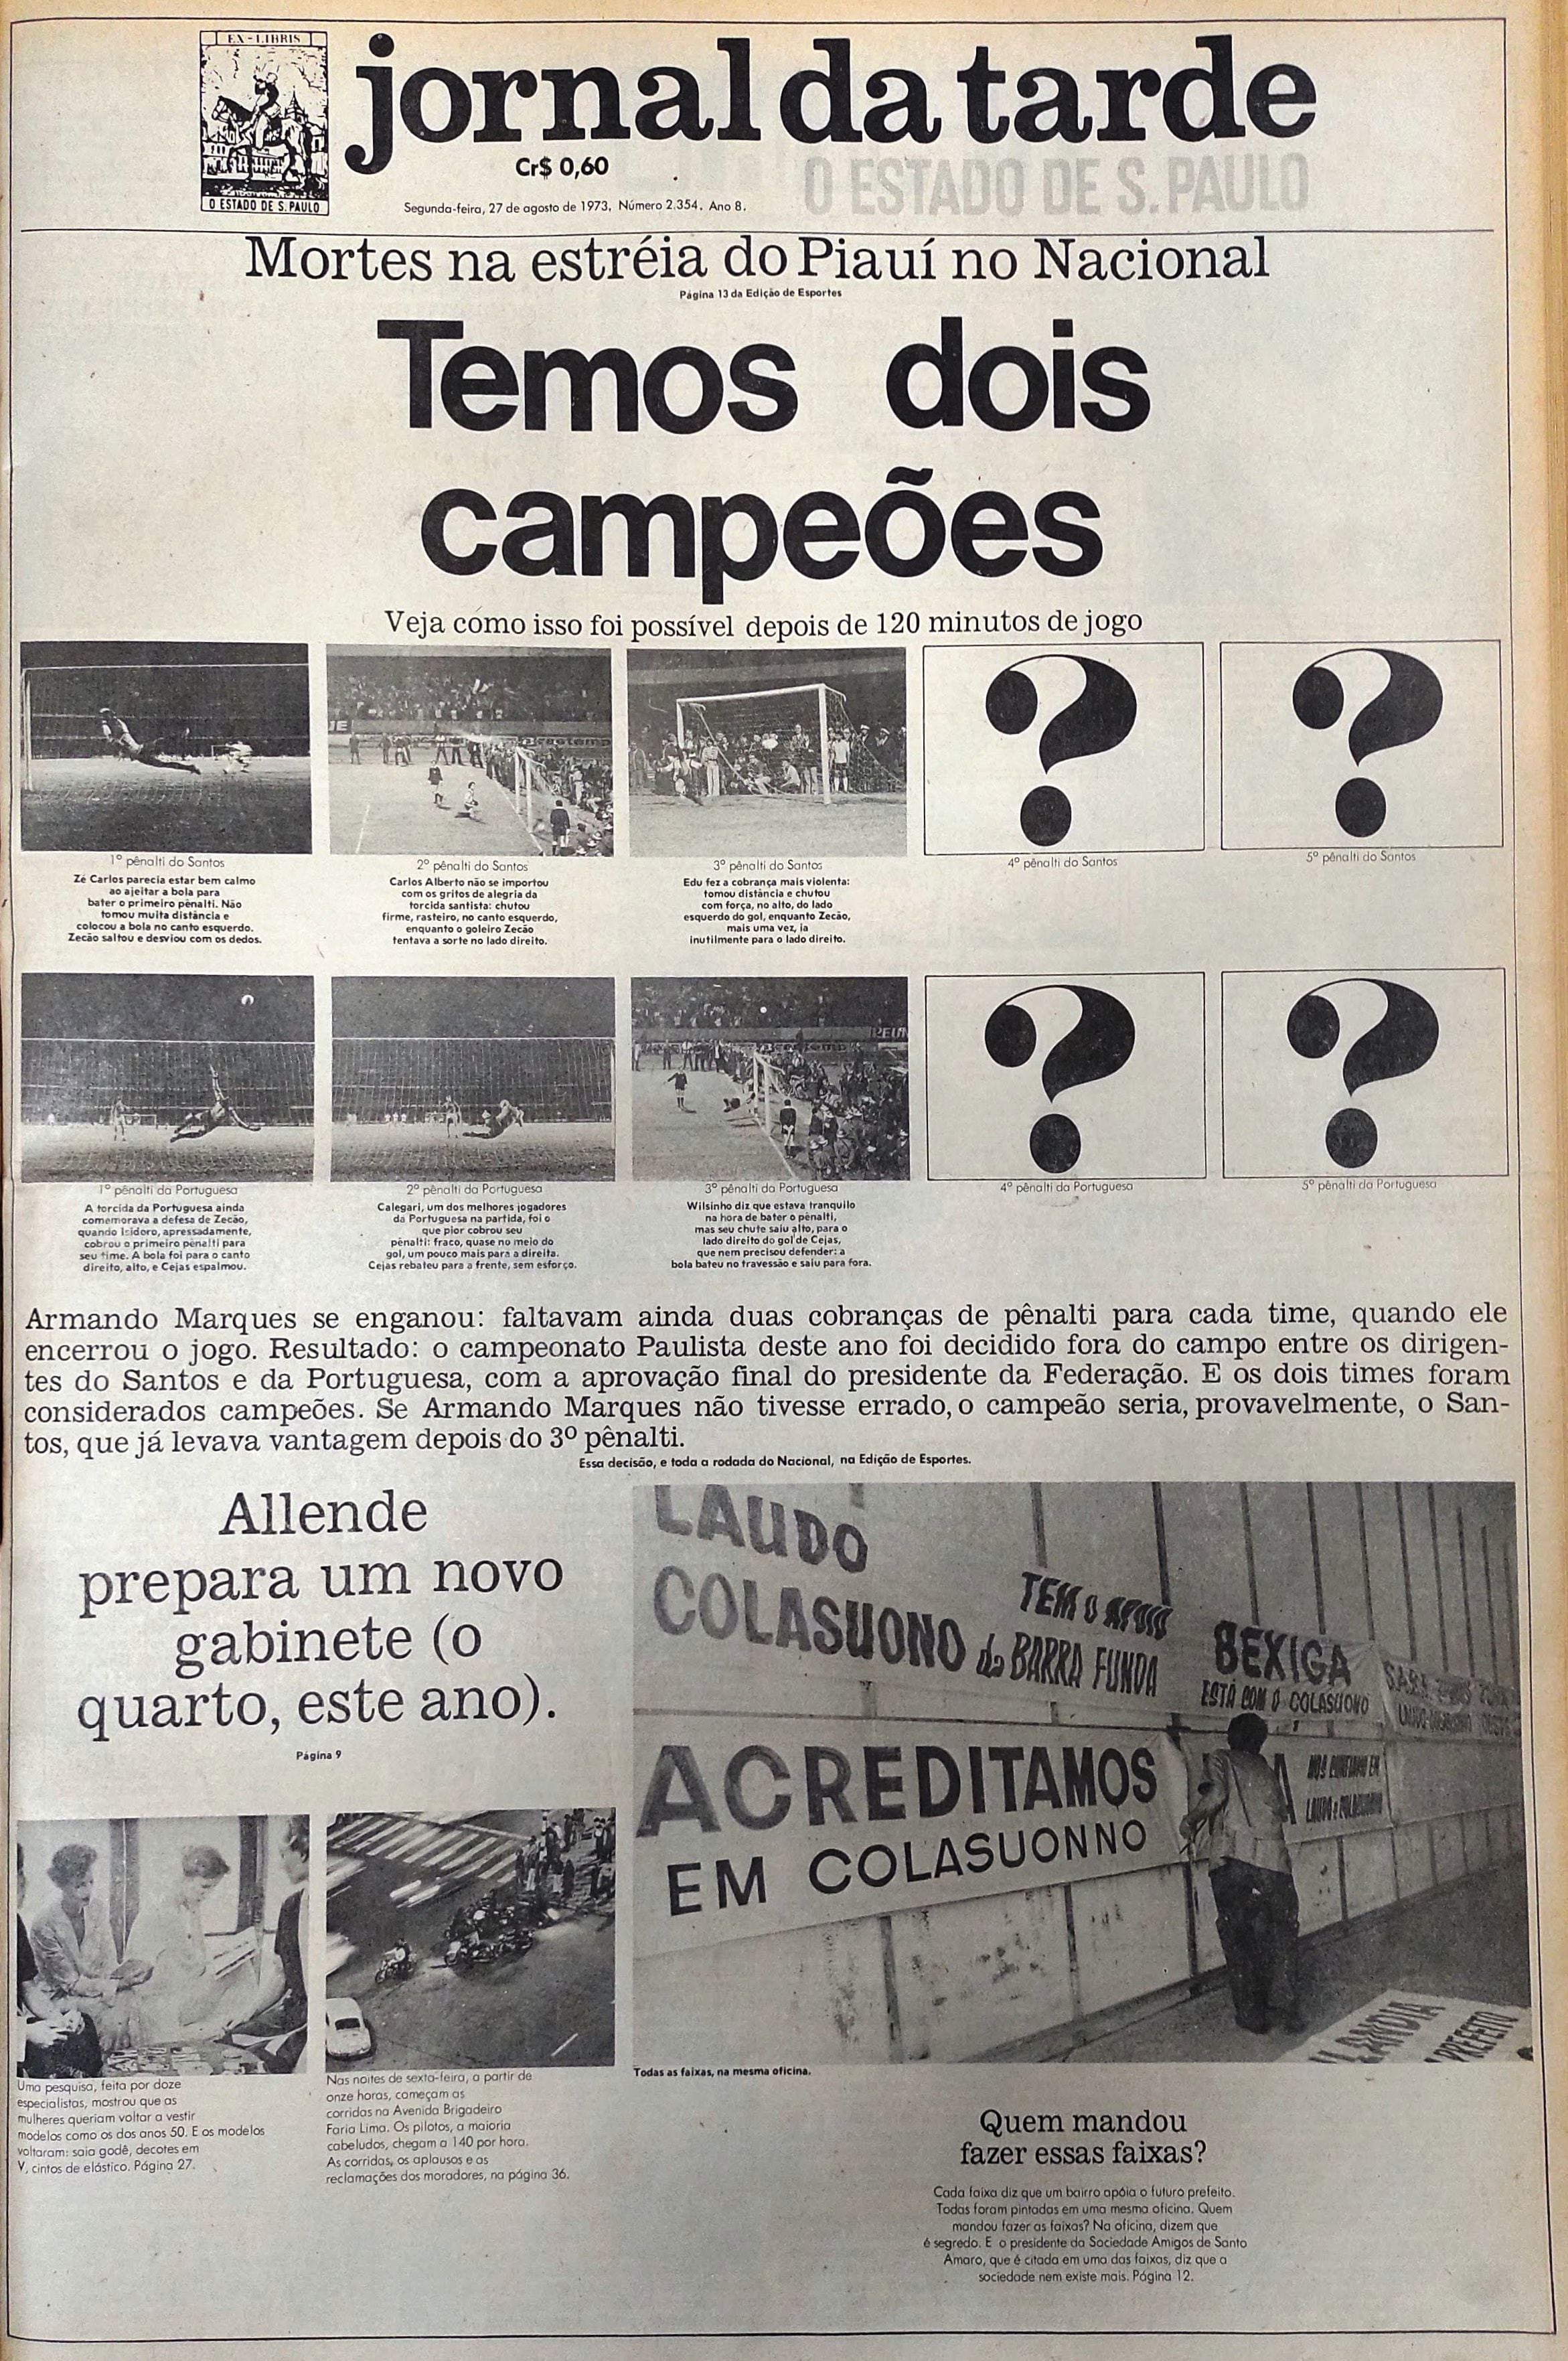 Quais times já foram campeões do Campeonato Paulista de futebol